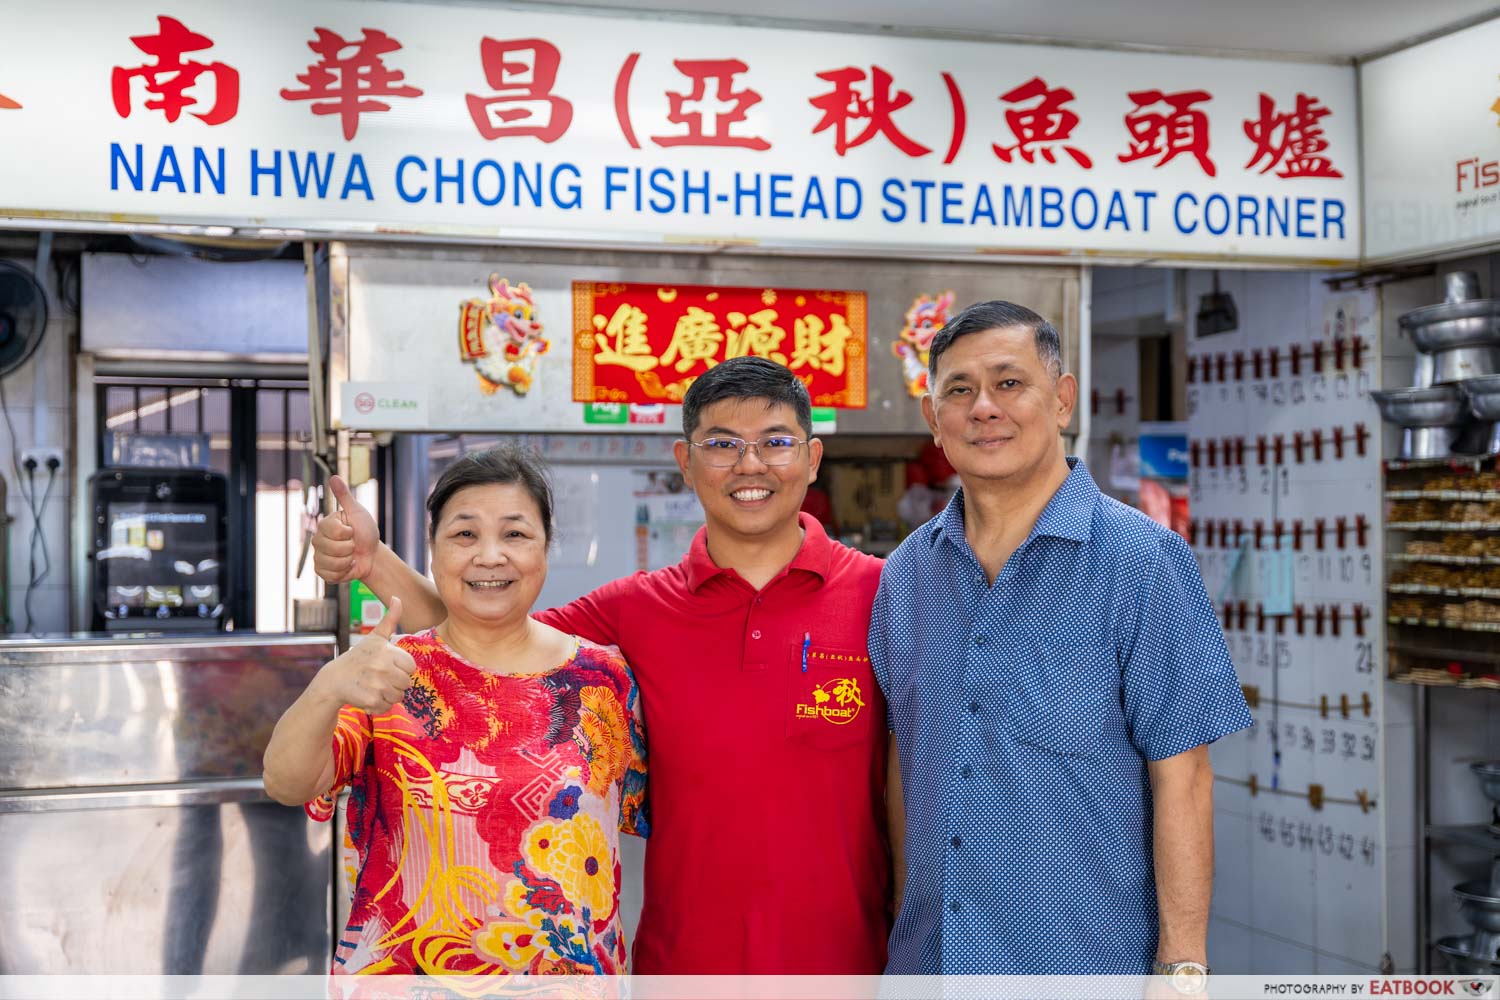 nan-hwa-chong-fish-head-steamboat-storefront